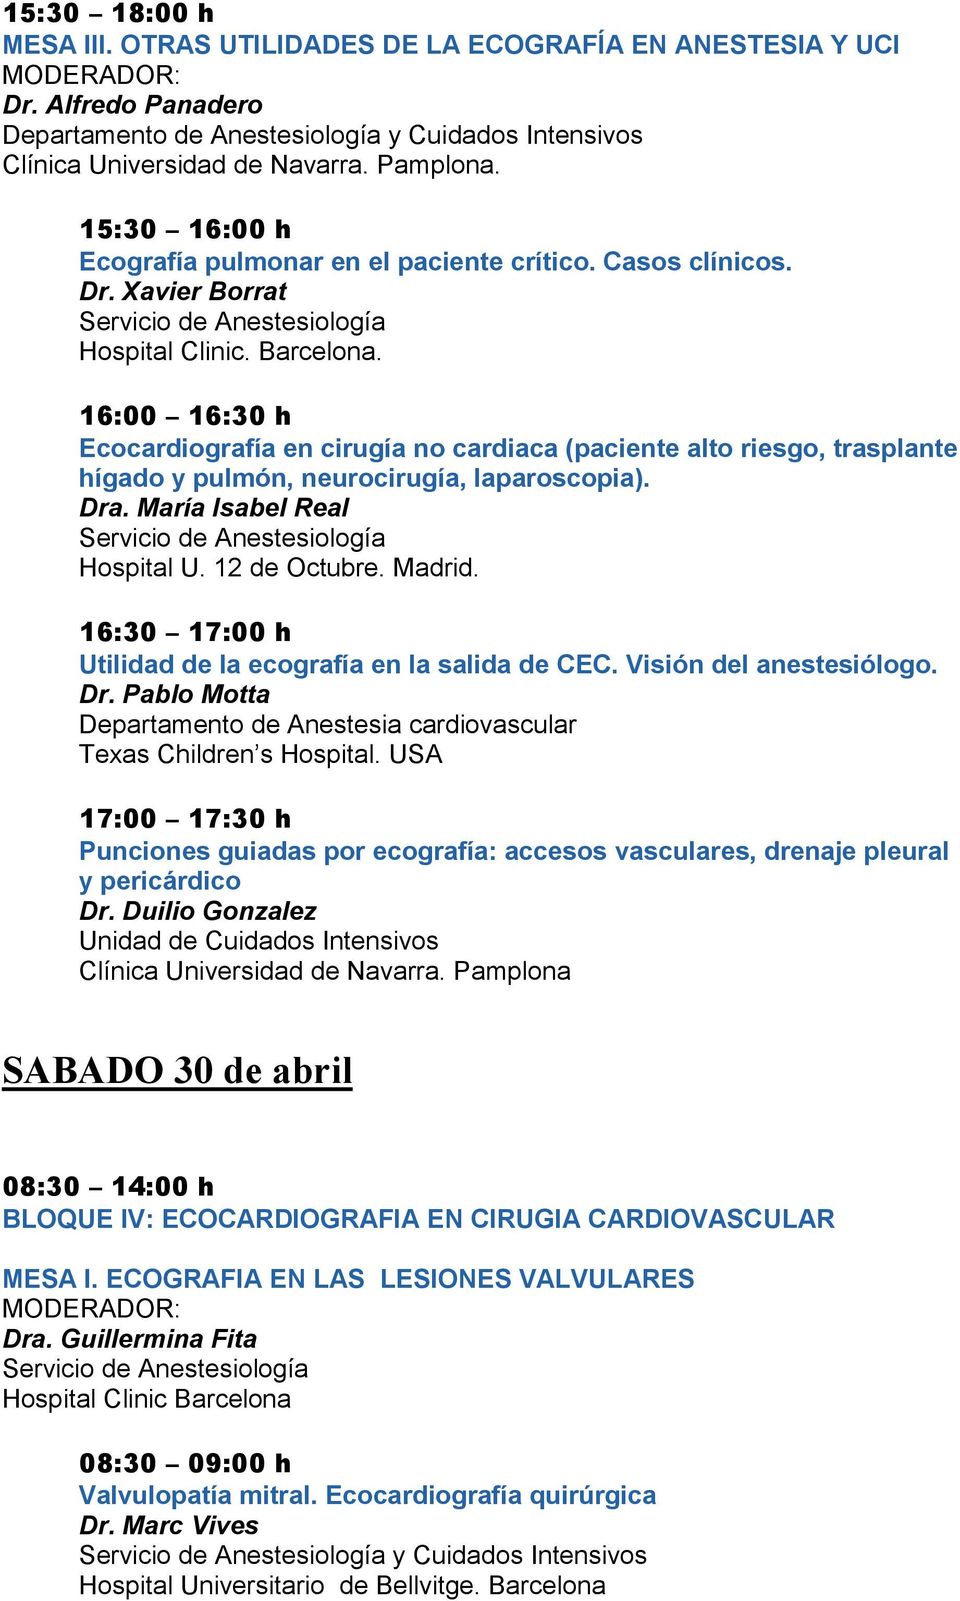 16:00 16:30 h Ecocardiografía en cirugía no cardiaca (paciente alto riesgo, trasplante hígado y pulmón, neurocirugía, laparoscopia). Dra. María Isabel Real Hospital U. 12 de Octubre. Madrid.